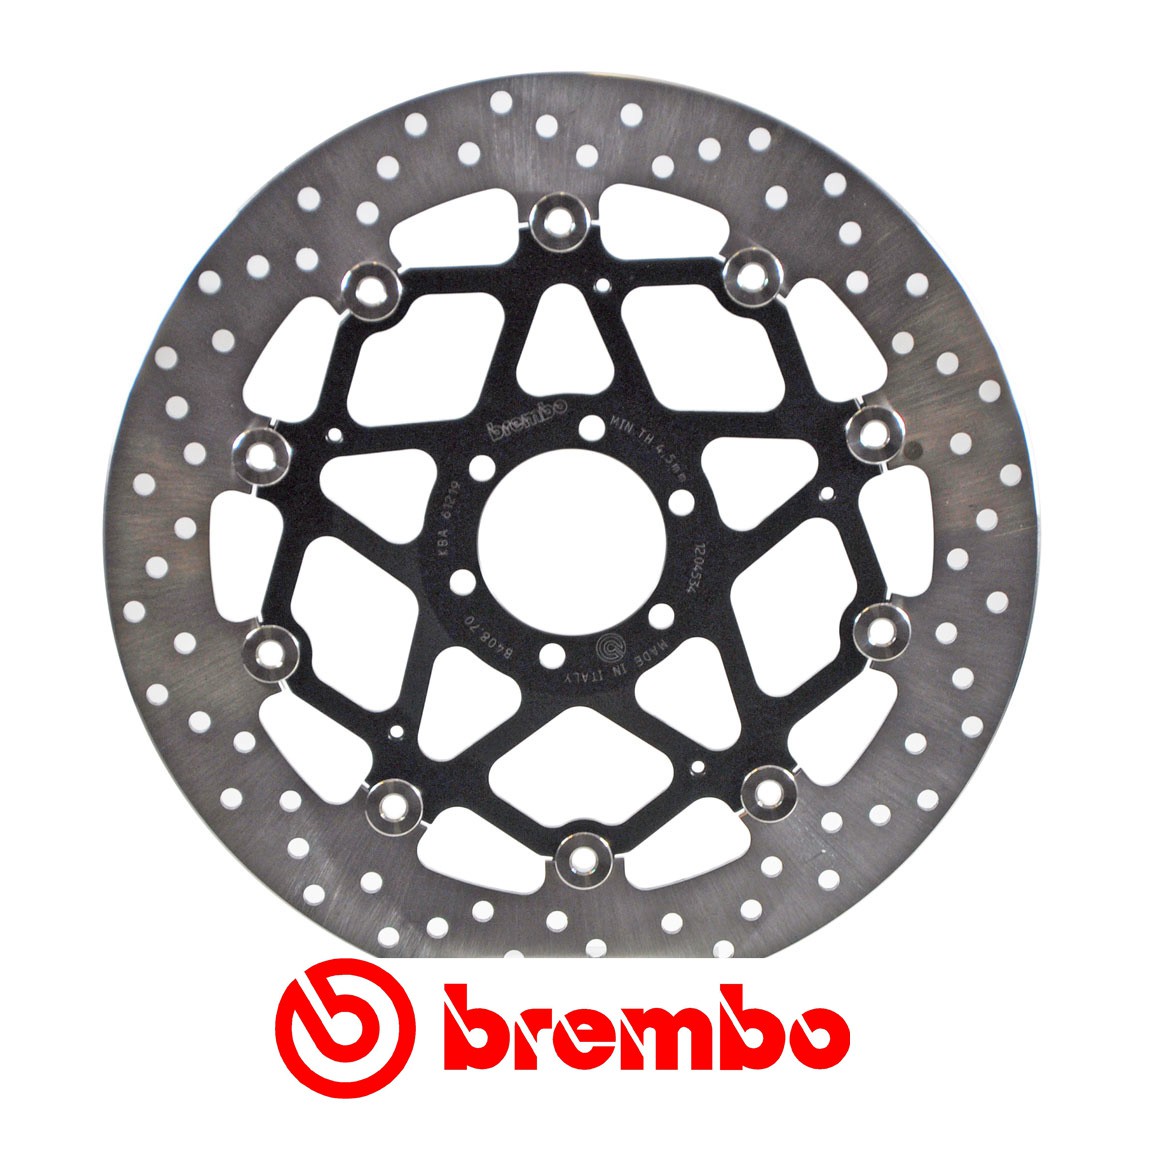 Disque de frein avant Brembo pour RSV 1000 (98-07) RSV4 (09-16)